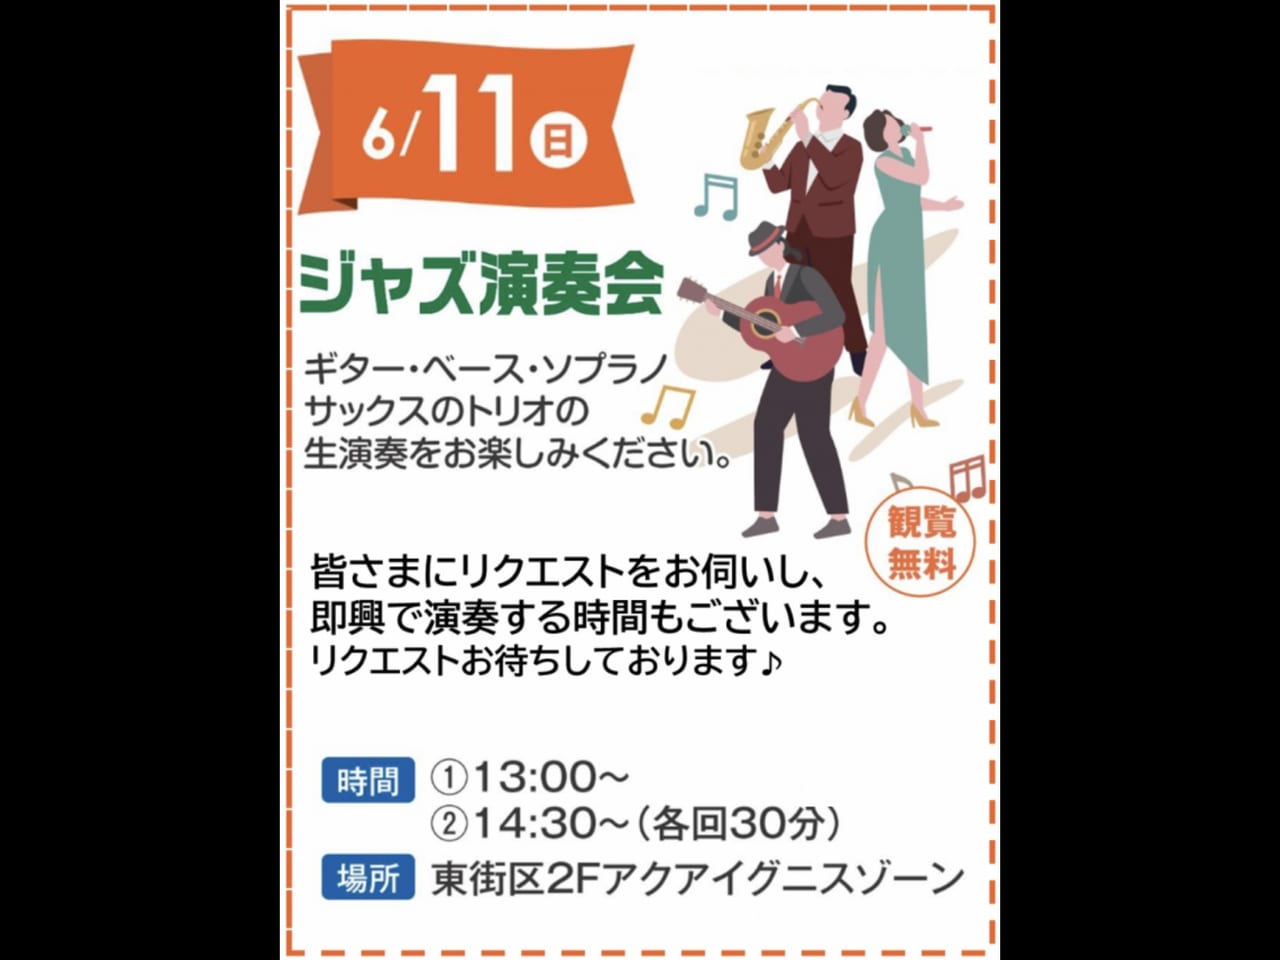 【吉川市】6/11(日)イオンタウン吉川美南で「ジャズ演奏会」が開催されるそうです♪即興パフォーマンスも♪